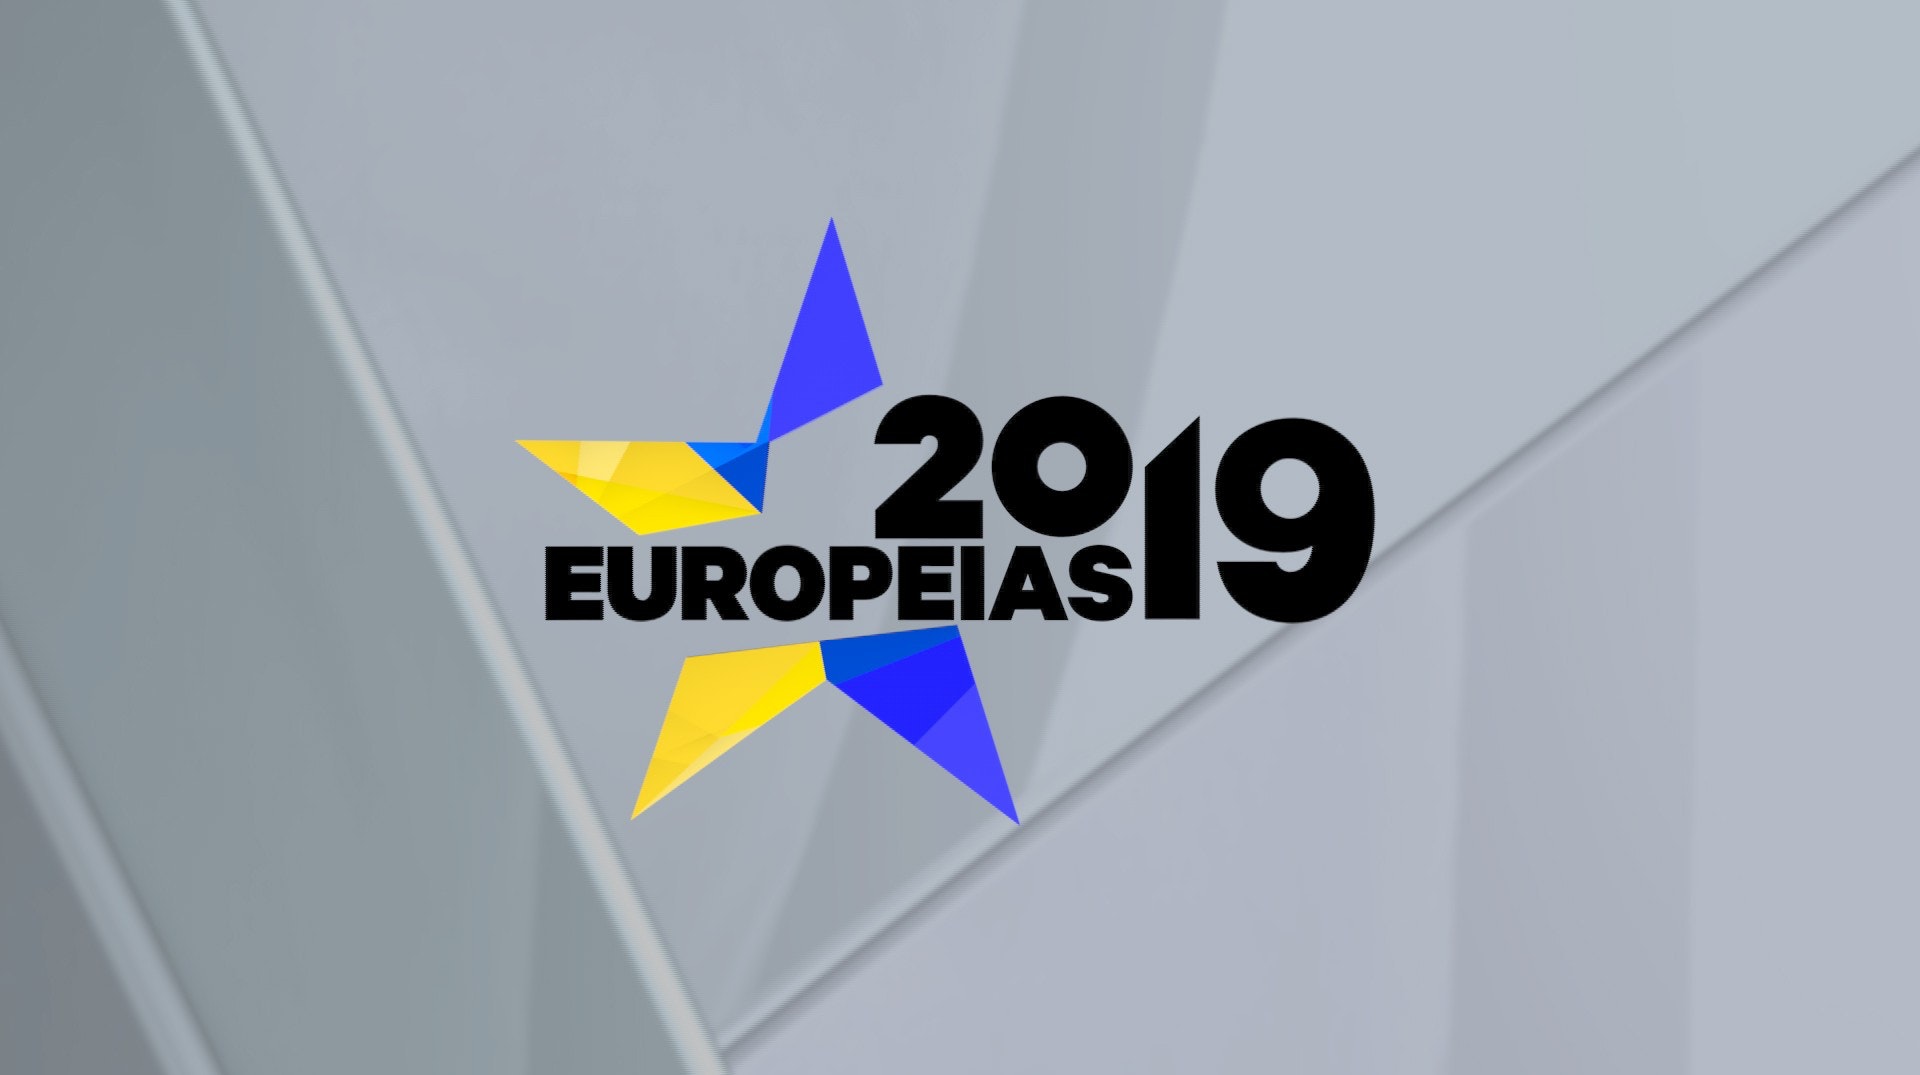  «Europeias 2019»: Conheça a emissão da RTP dedicada às eleições